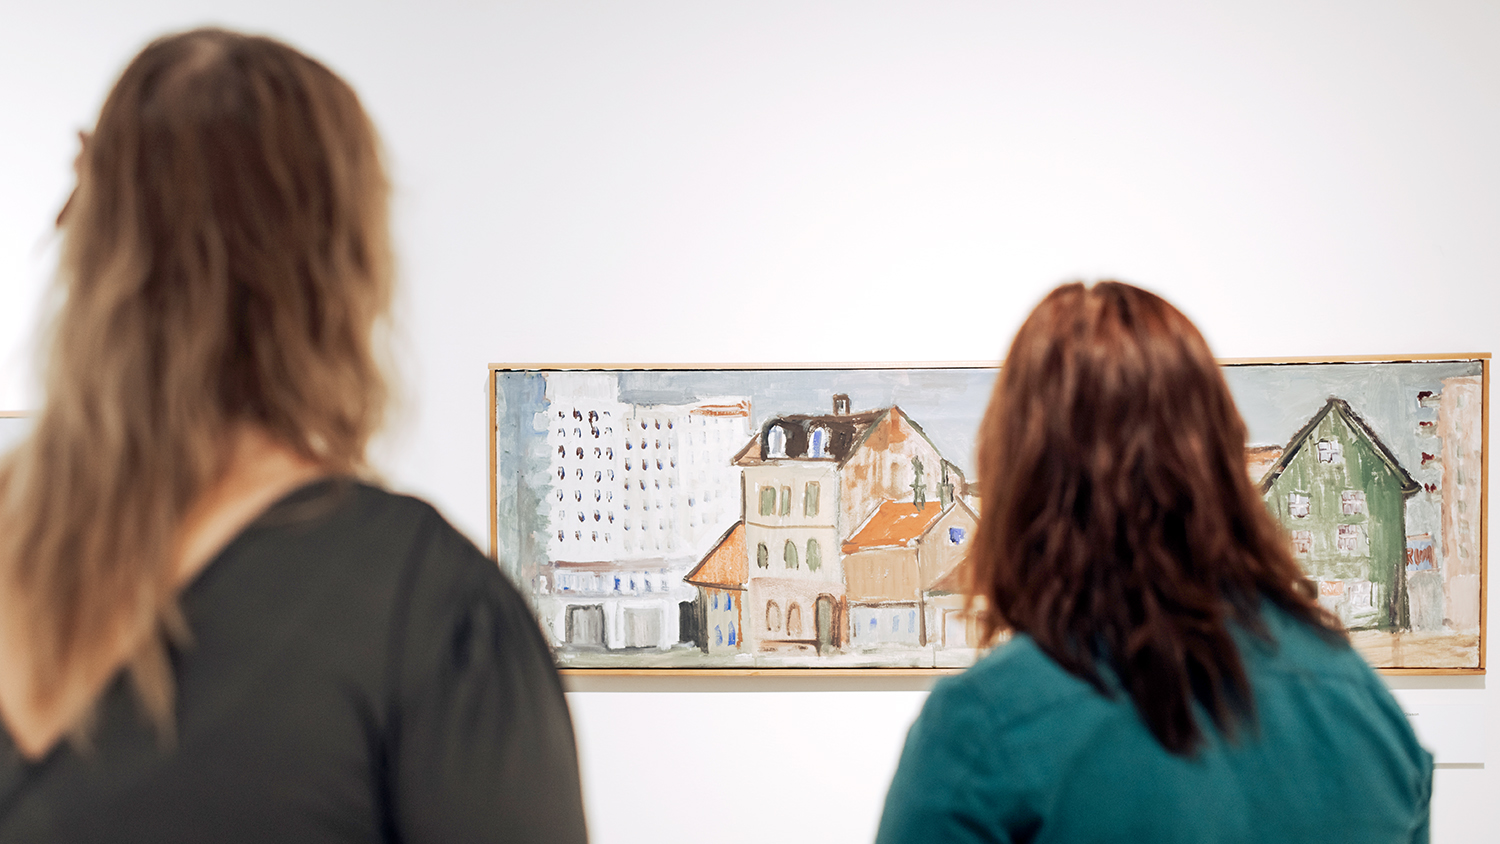 Två personer halvt suddiga i förgrunden, tittar på en målning föreställande äldre hus